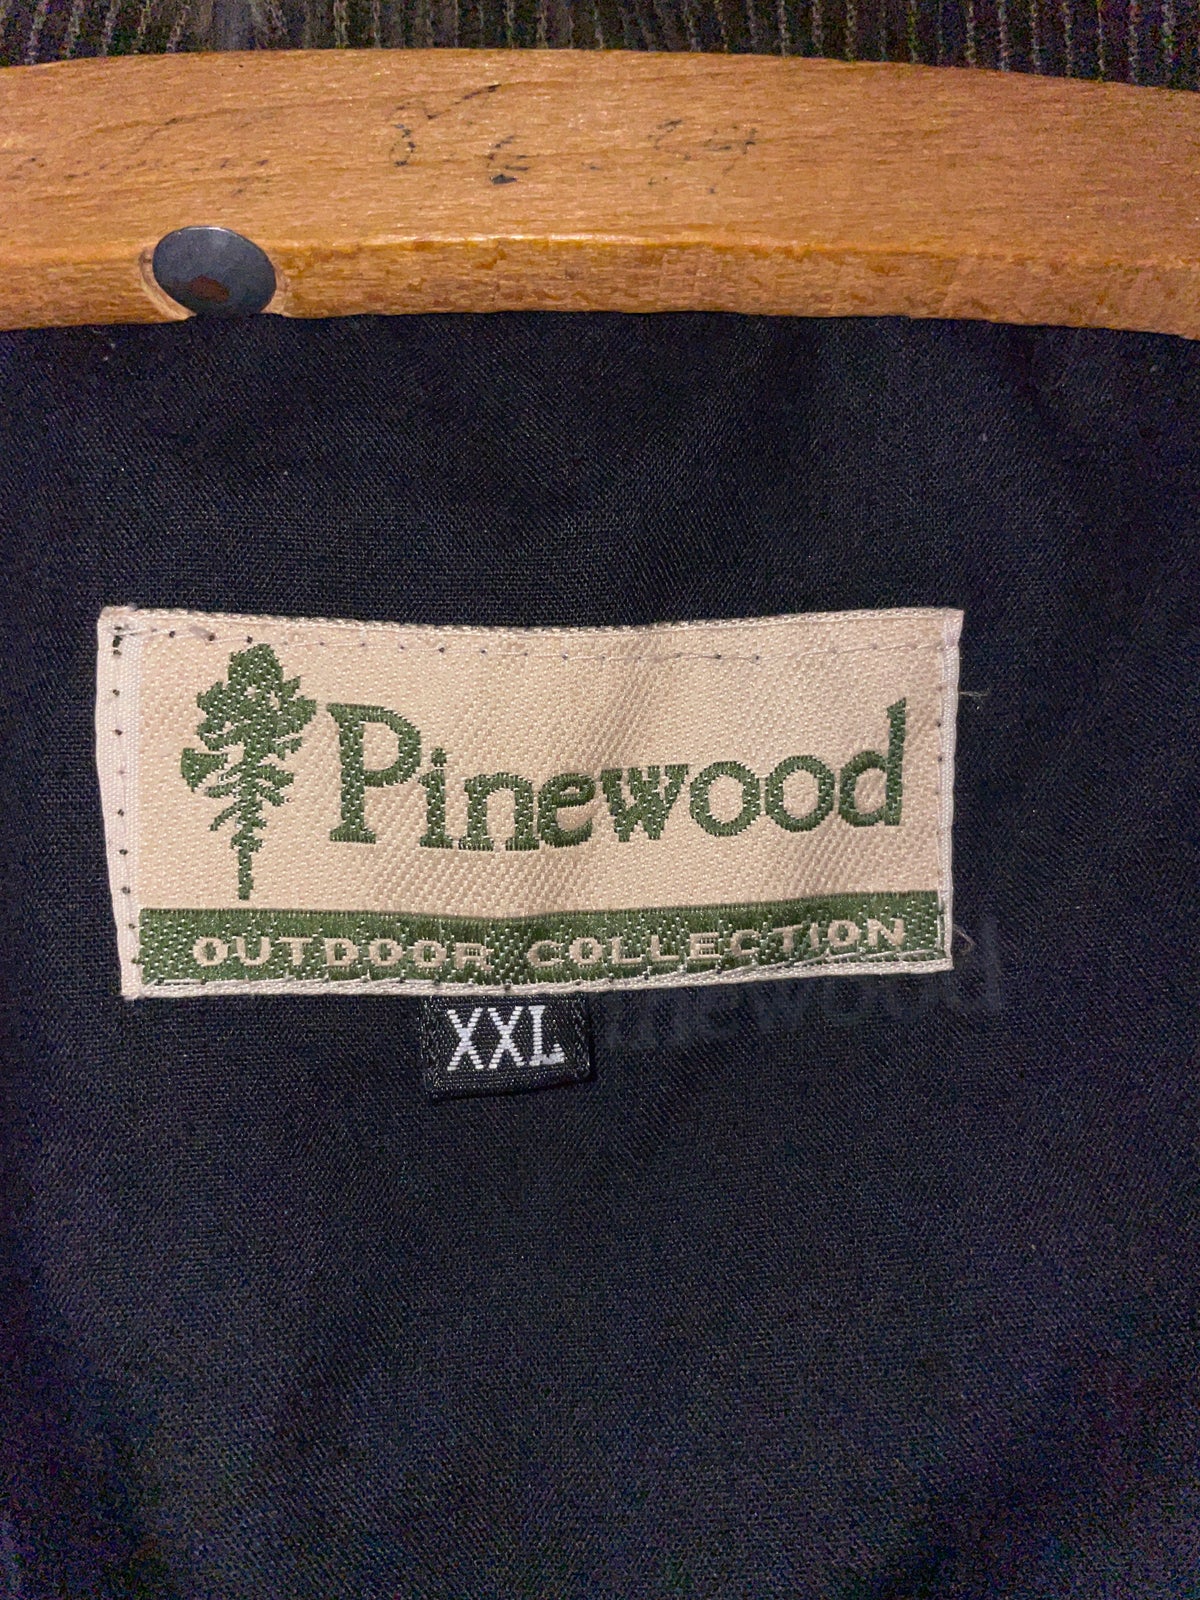 Jagttøj, Pinewood